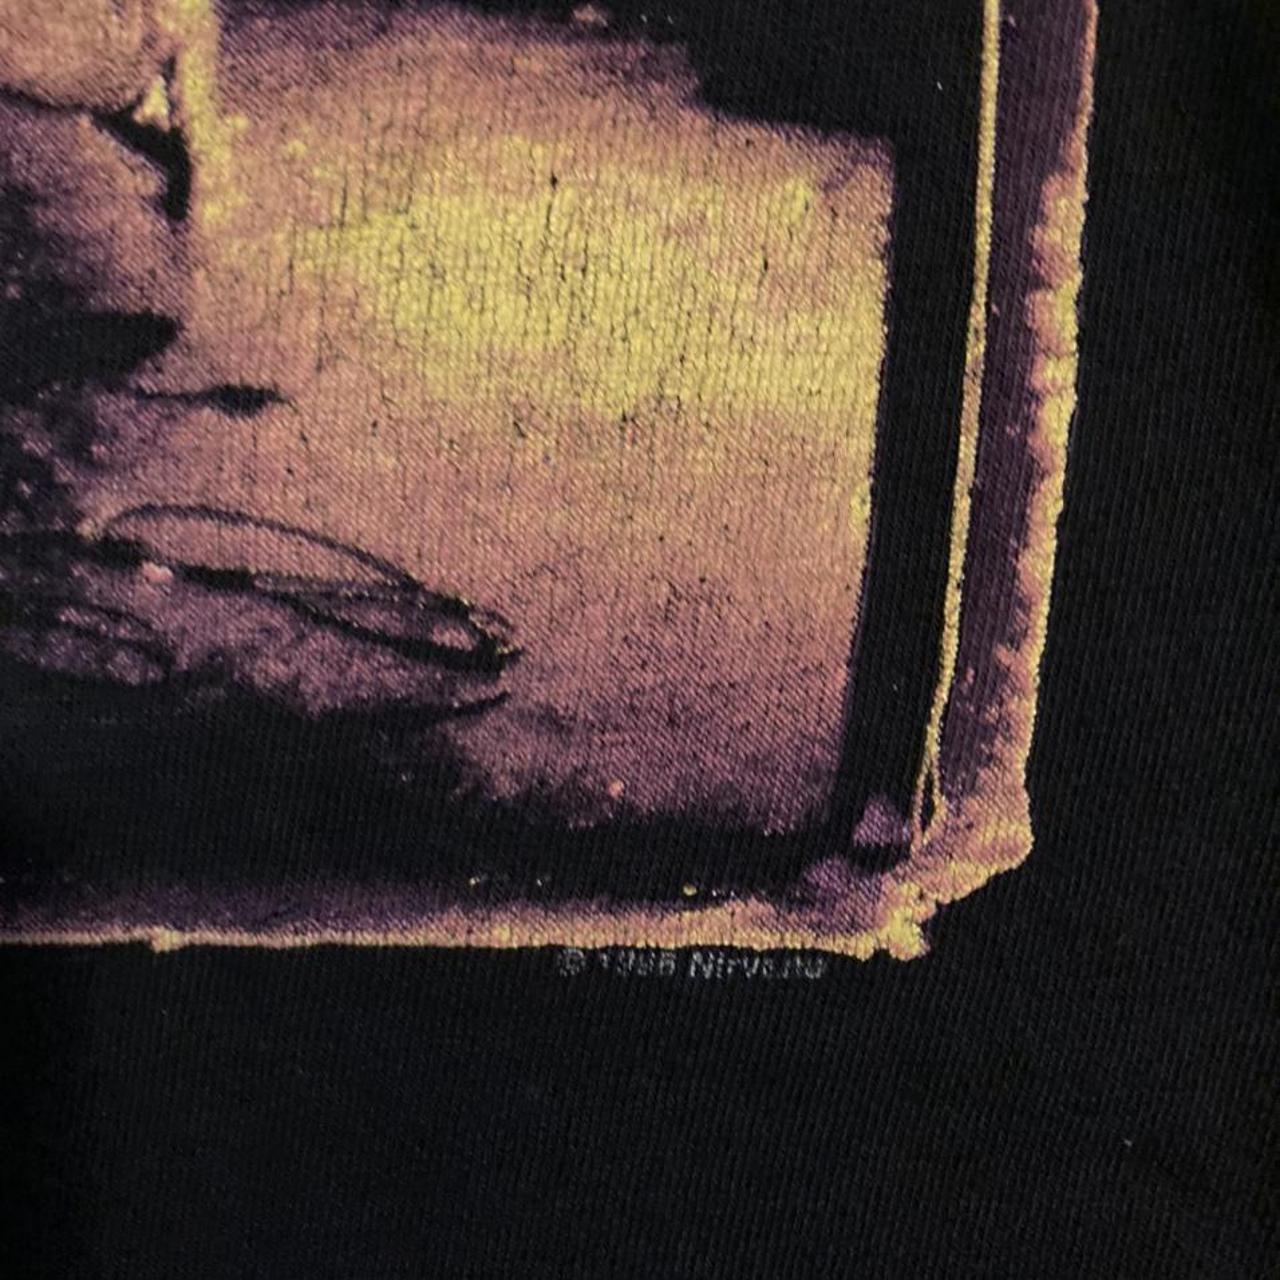 Vintage Kurt Cobain Nirvana 1996 Band Tee shirt... - Depop